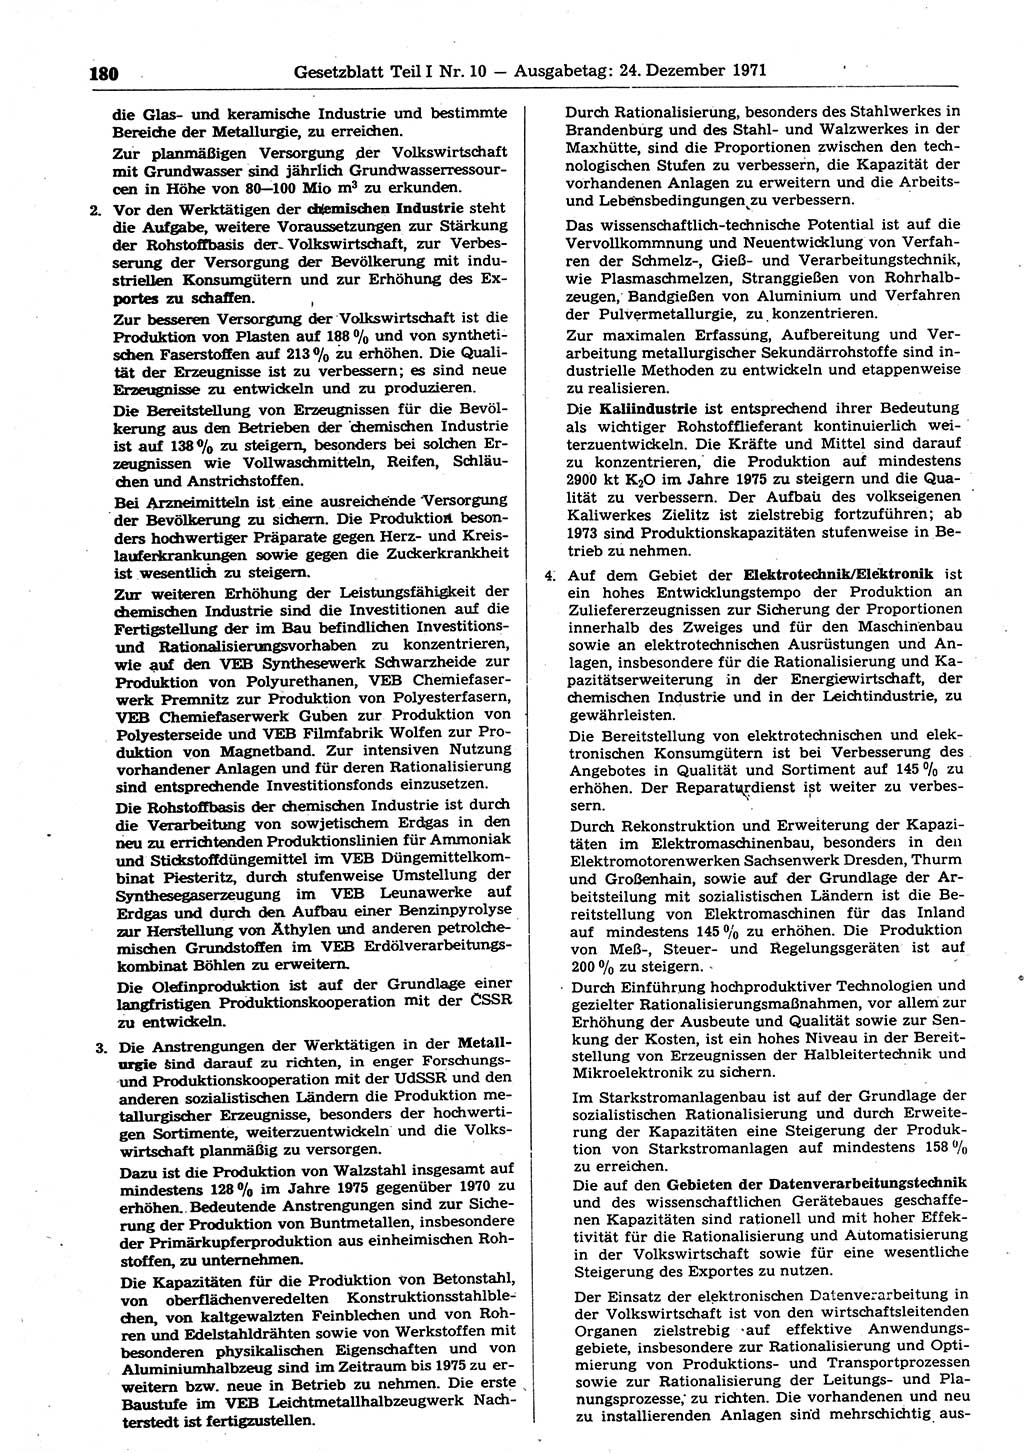 Gesetzblatt (GBl.) der Deutschen Demokratischen Republik (DDR) Teil Ⅰ 1971, Seite 180 (GBl. DDR Ⅰ 1971, S. 180)